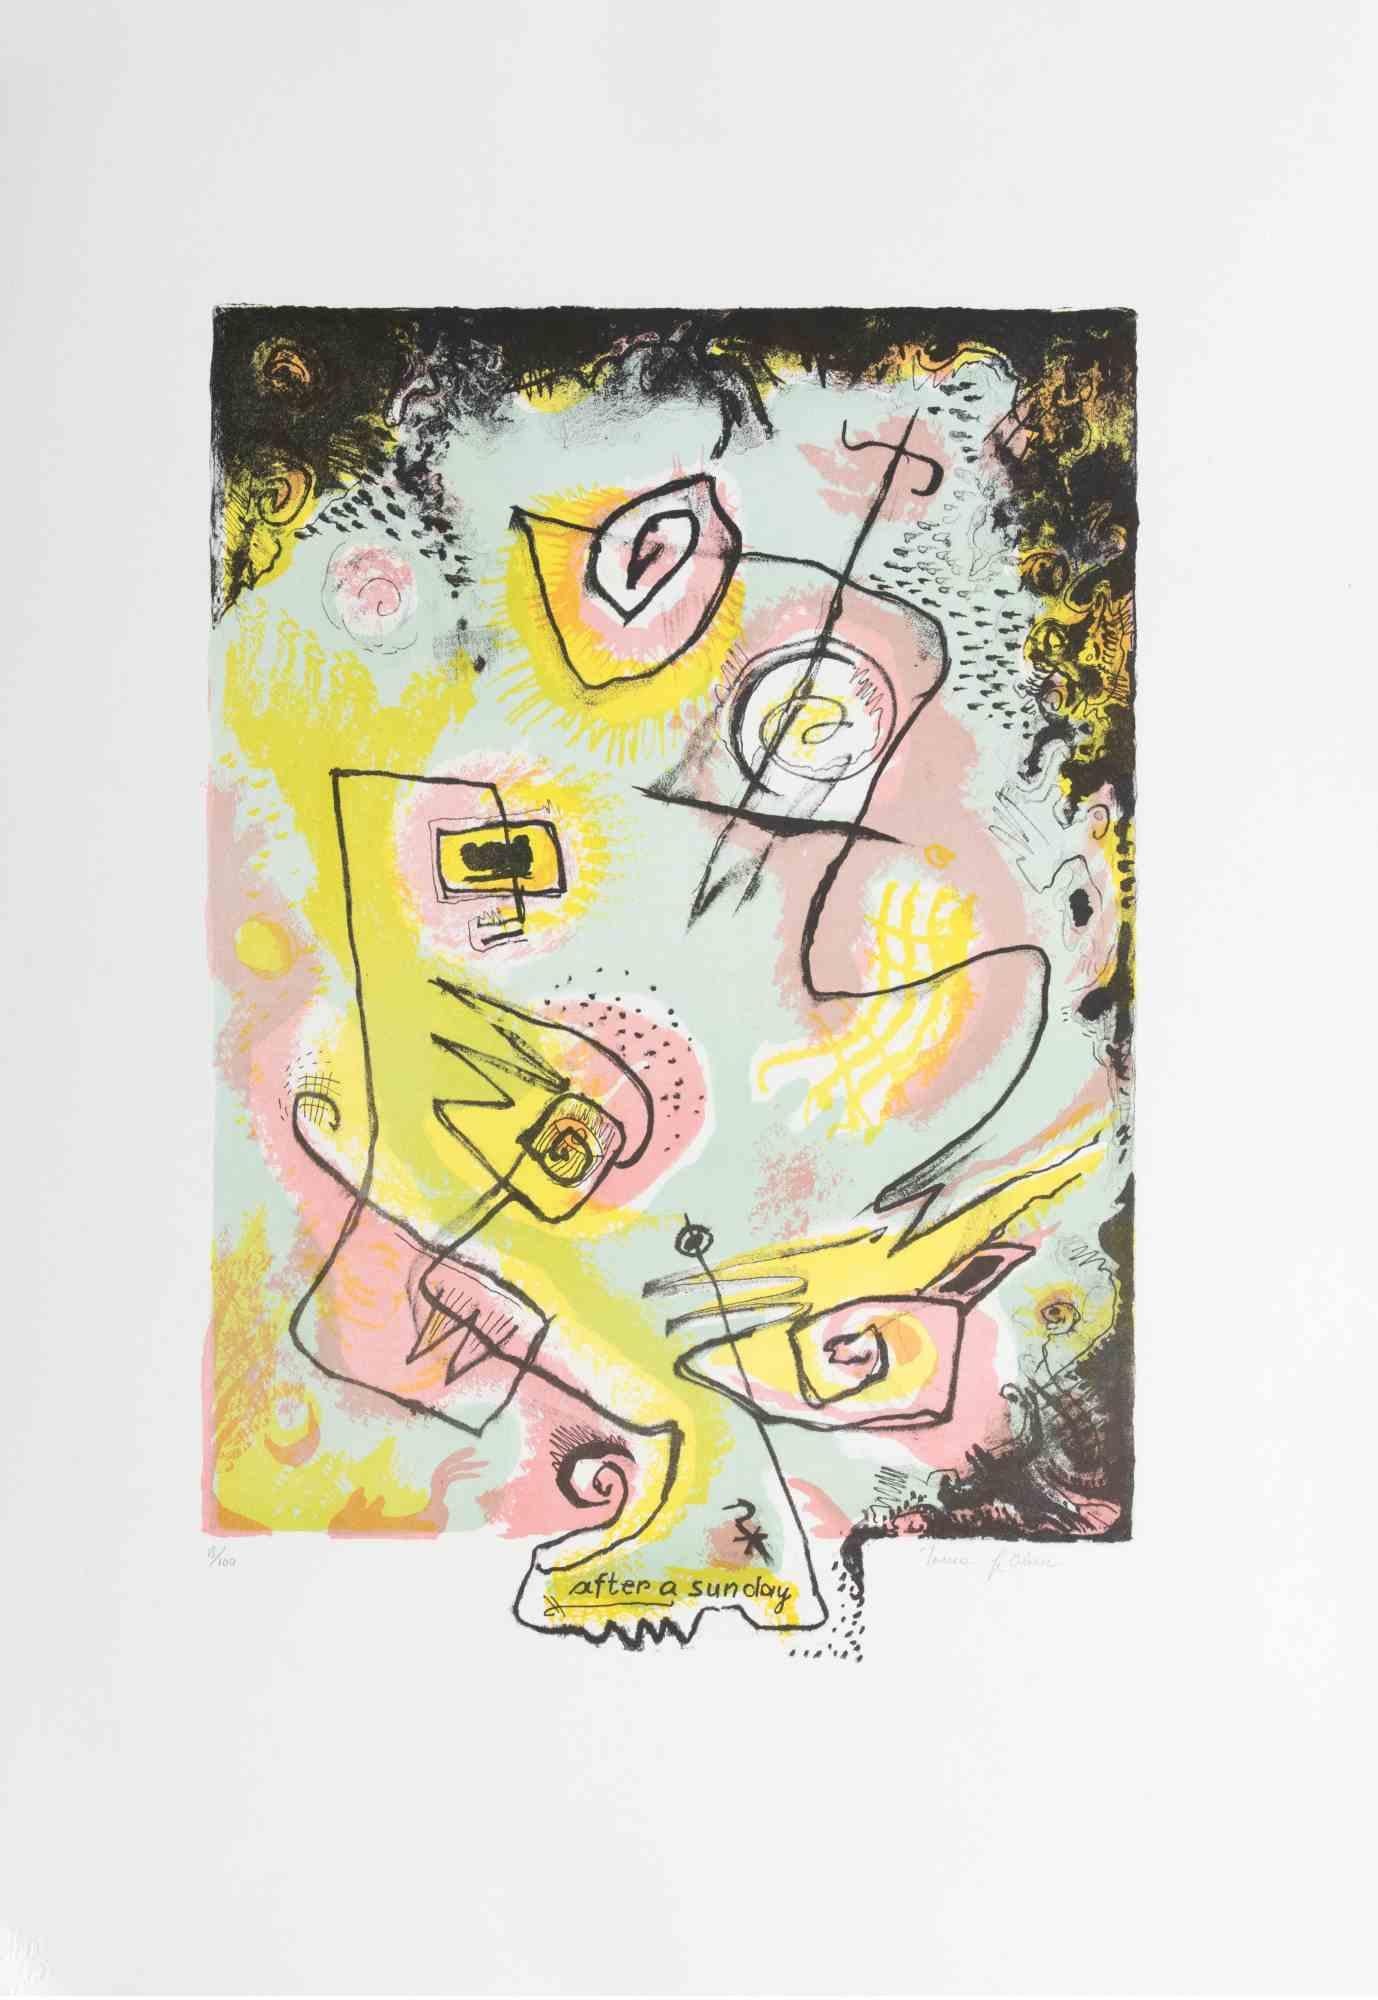 After a sunday est une œuvre d'art contemporain réalisée par Le Pond dans les années 1970.

Lithographie en couleurs mélangées.

Signé à la main dans la marge inférieure.

Numéroté dans la marge inférieure.

Edition de 18/100